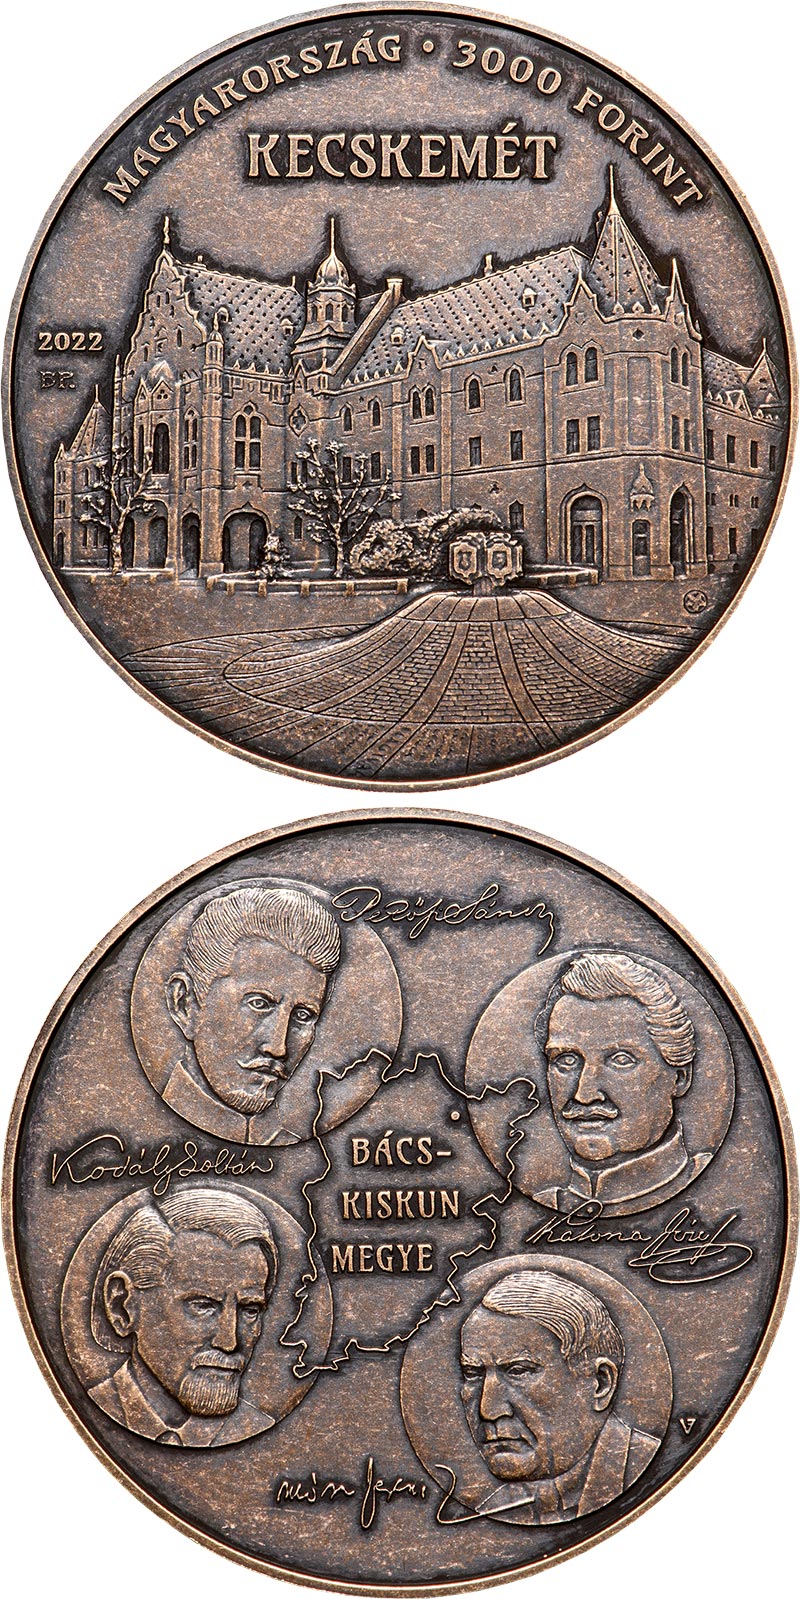 Image of 3000 forint coin - Kecskemét, Bács-Kiskun County | Hungary 2022